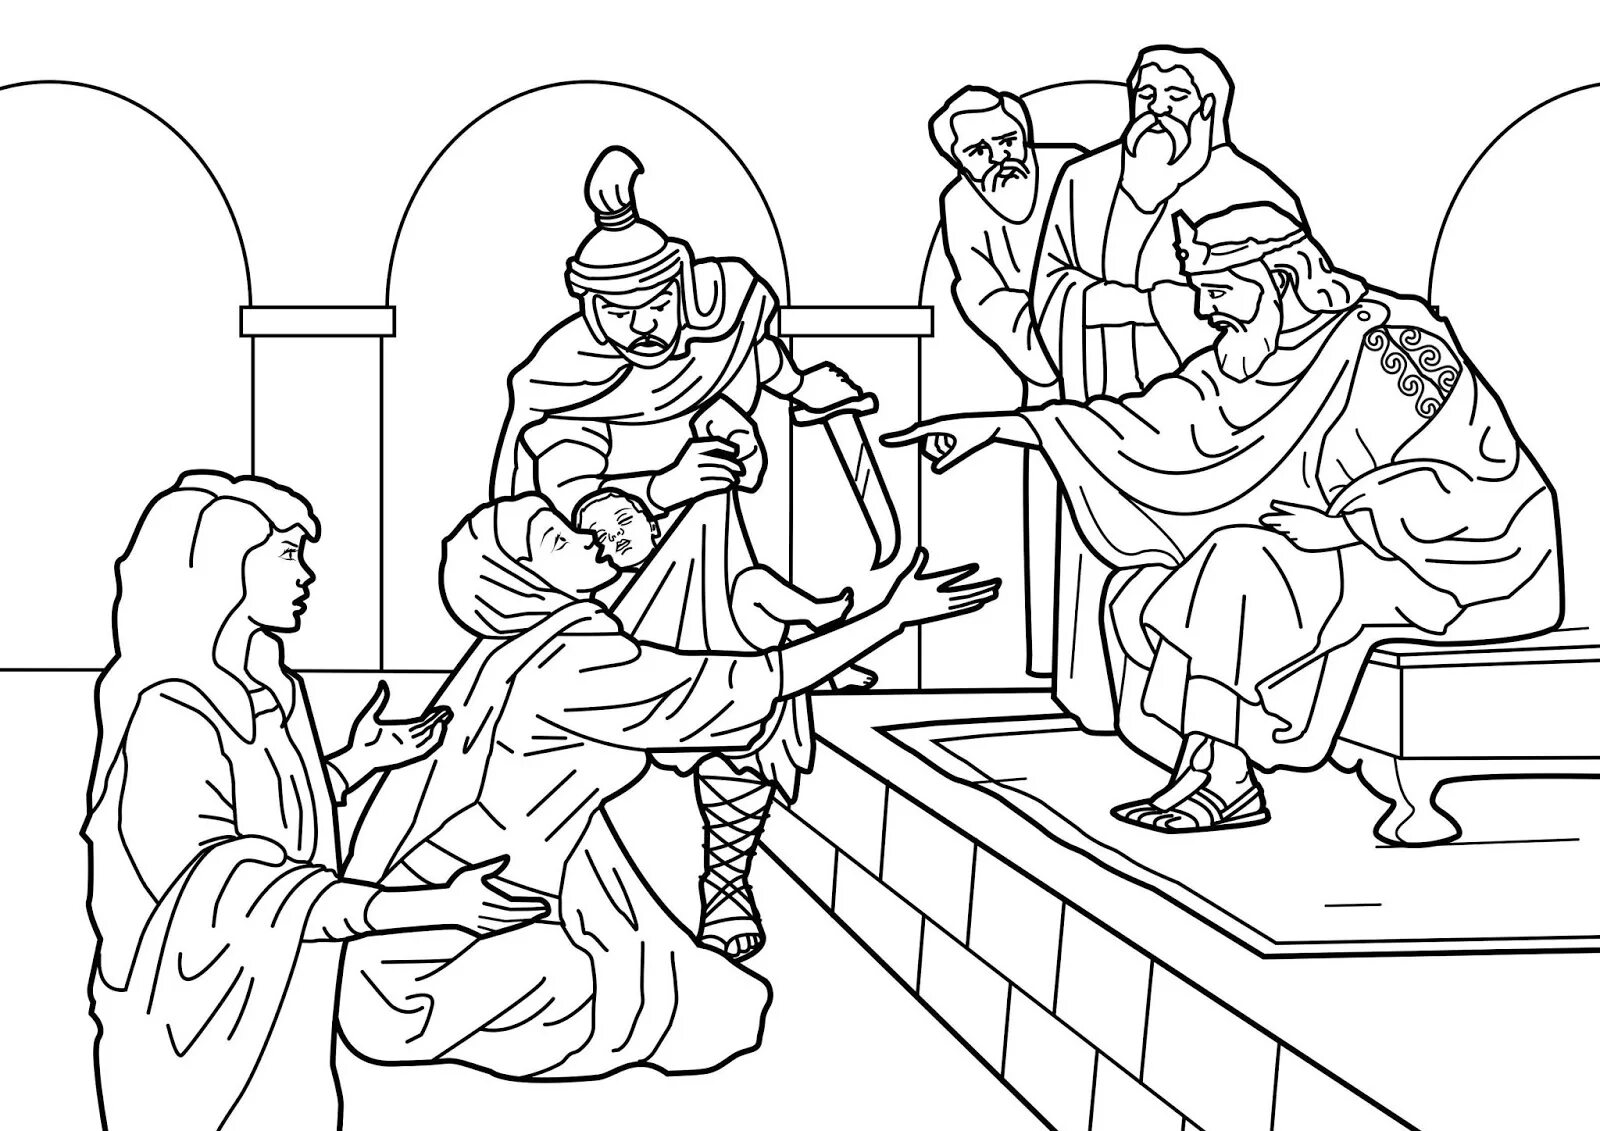 Где находится суд соломона. Суд Соломона иллюстрации. Суд Соломона Ветхий Завет. Иллюстрация к притче о суде царя Соломона.